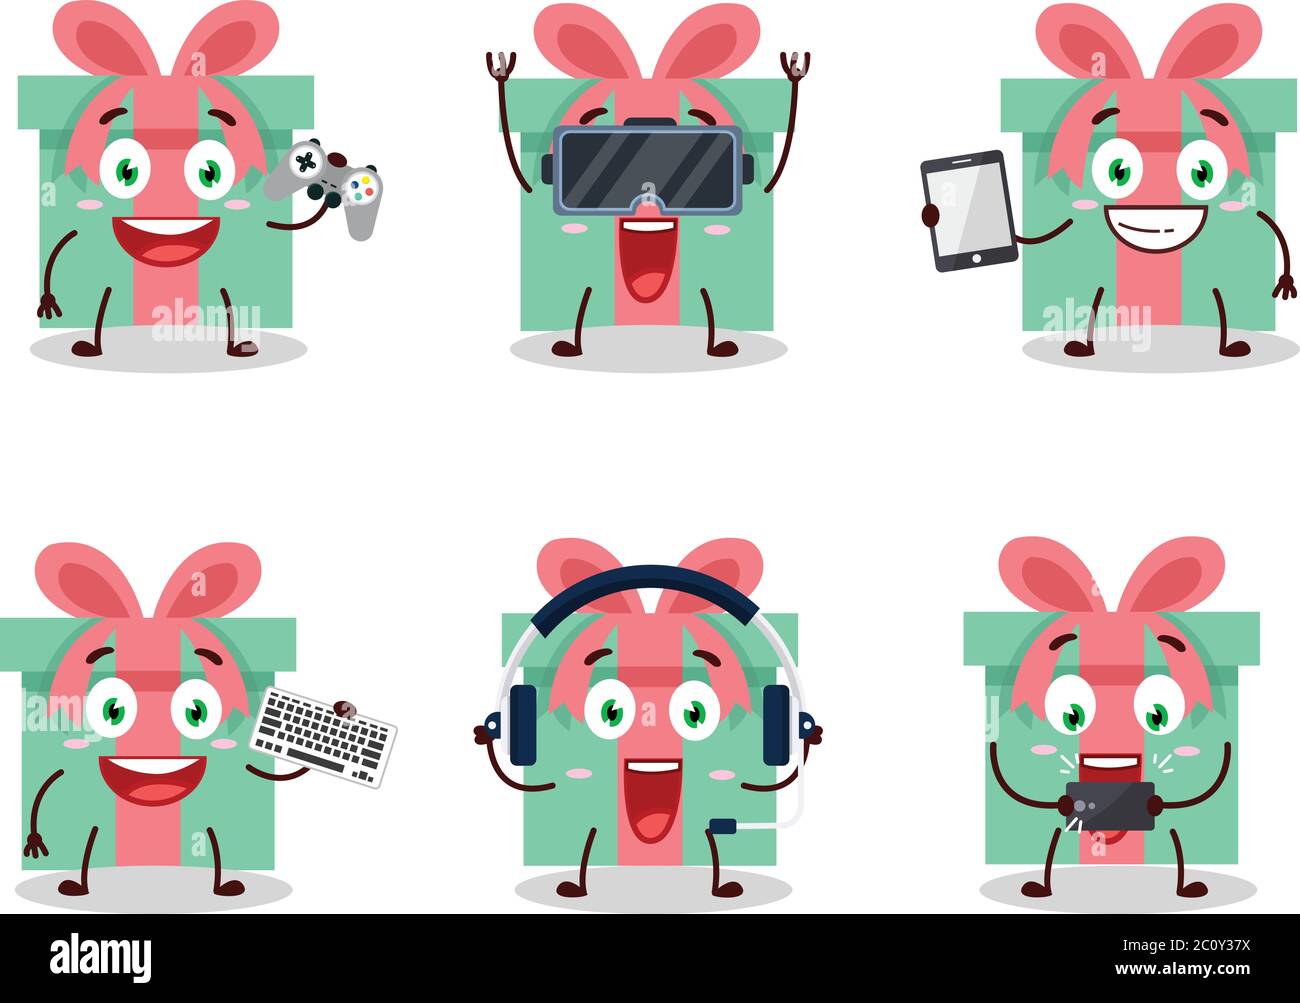 Le personnage de dessin animé de cadeau joue à des jeux avec diverses émoticônes mignons Illustration de Vecteur